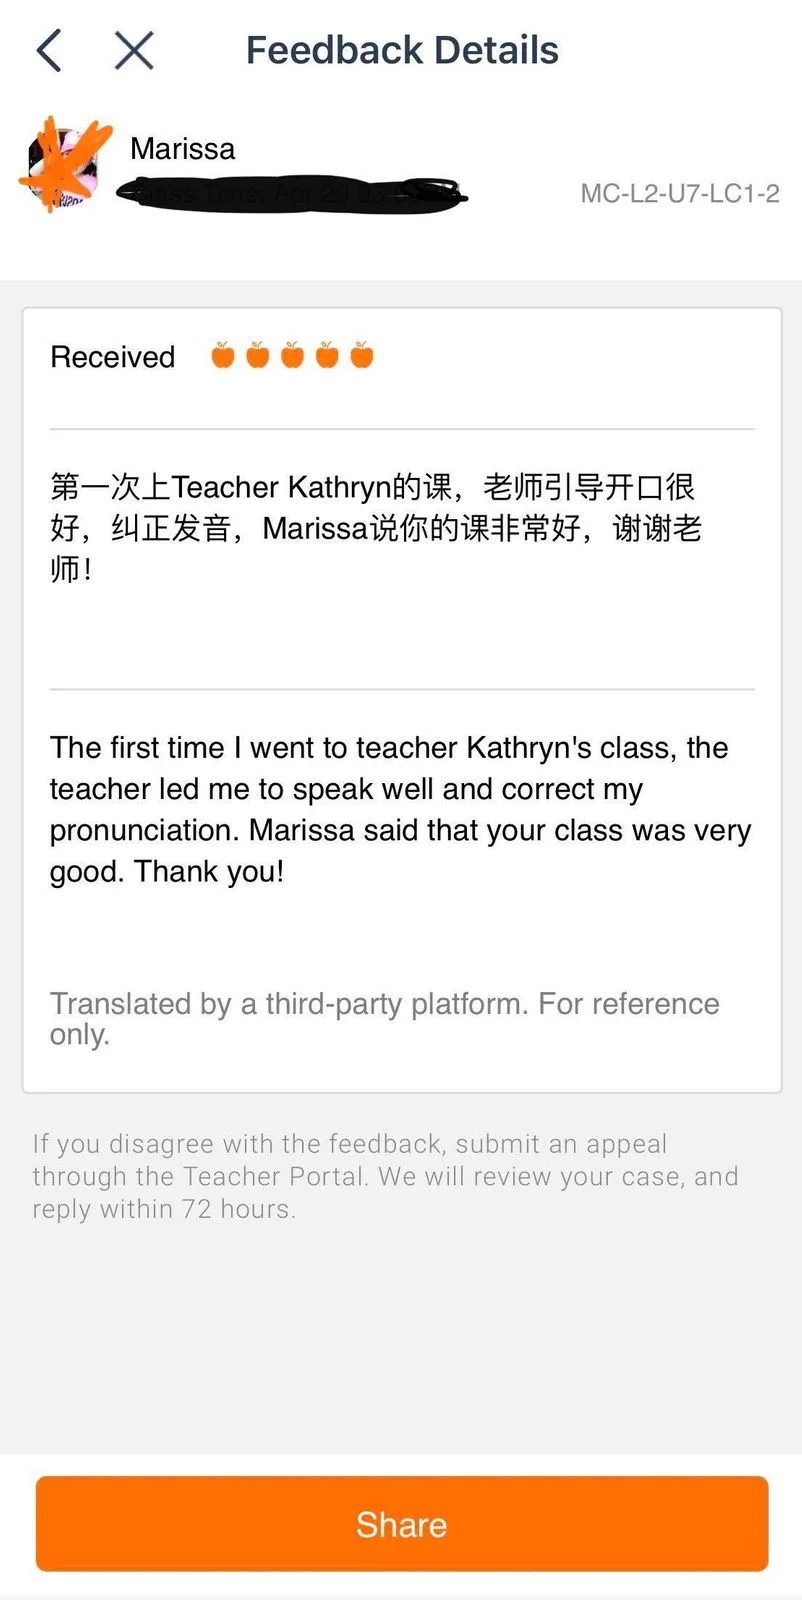 VIPKid teacher review